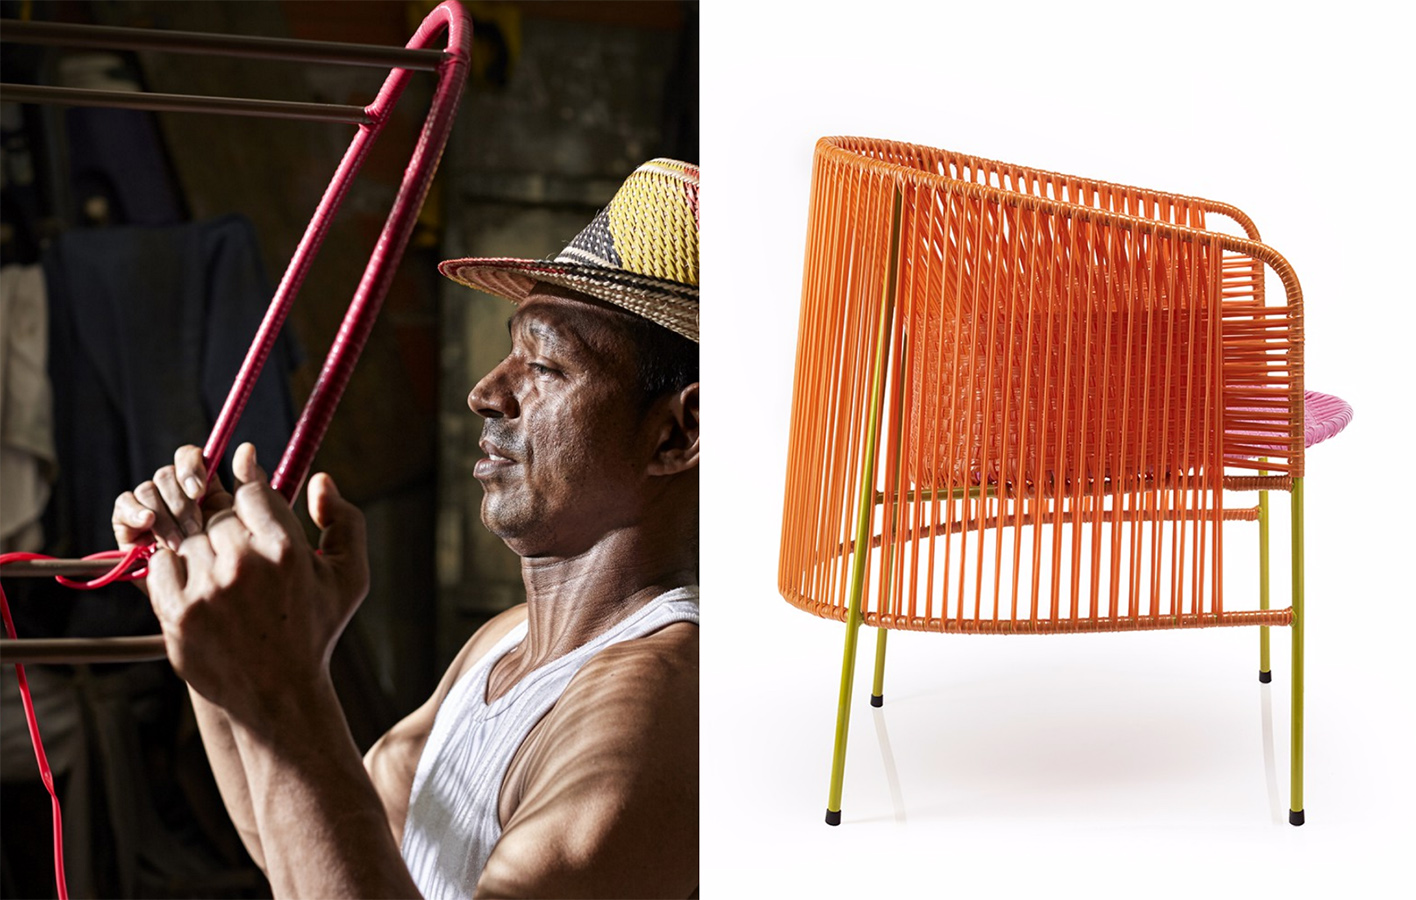 La silla lounge Caribe está hecha en PVC tejido a mano y su estructura es de tubería de acero, diseño de Sebastian Herkner para Ames.